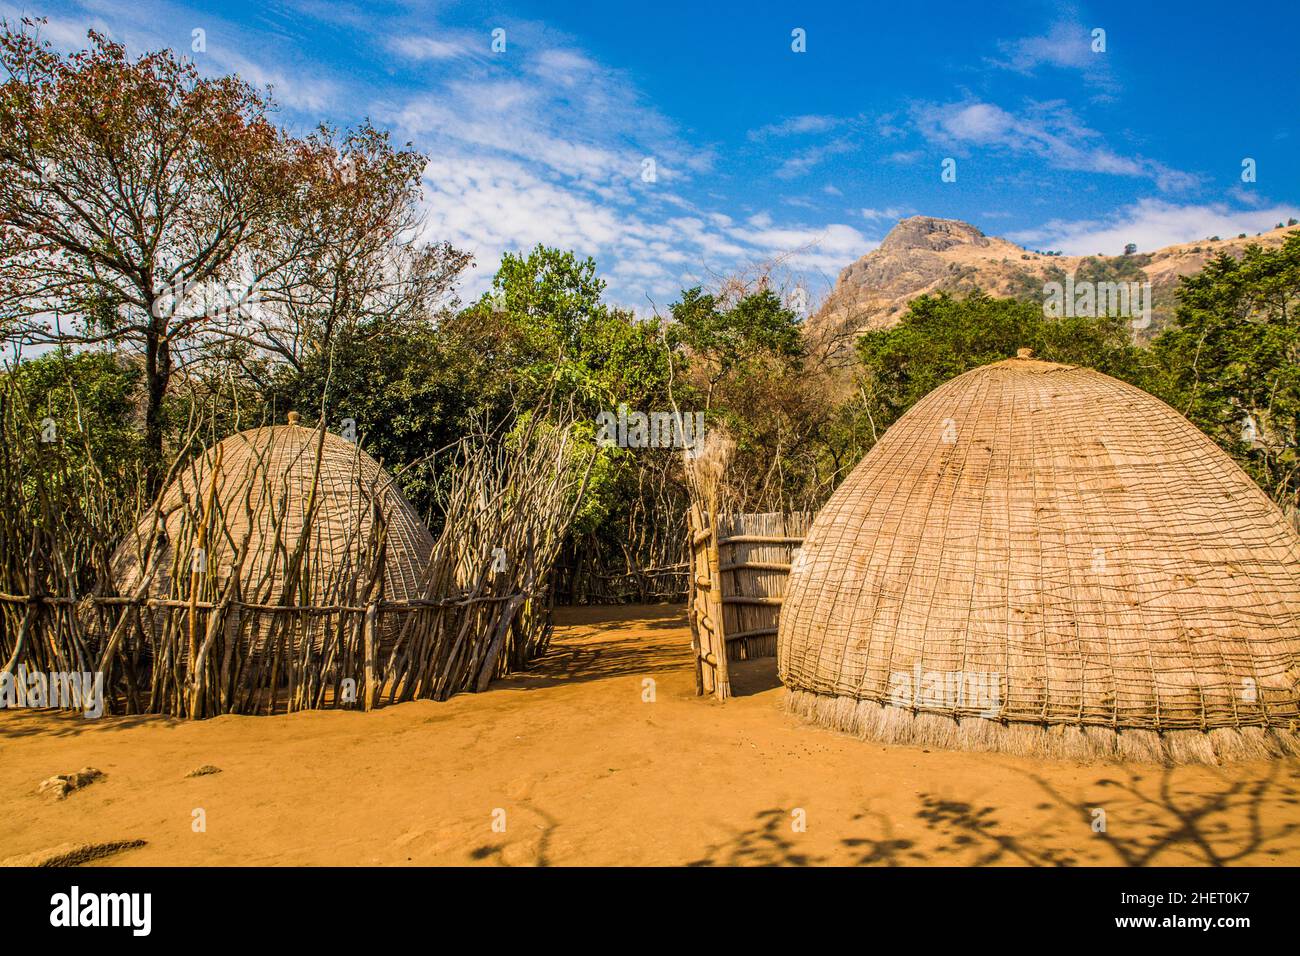 Huttes de ruches, aperçus de la vie swazie, village culturel swazzi, réserve naturelle, Swaziland, eSwatini,Afrique du Sud, Millane Banque D'Images